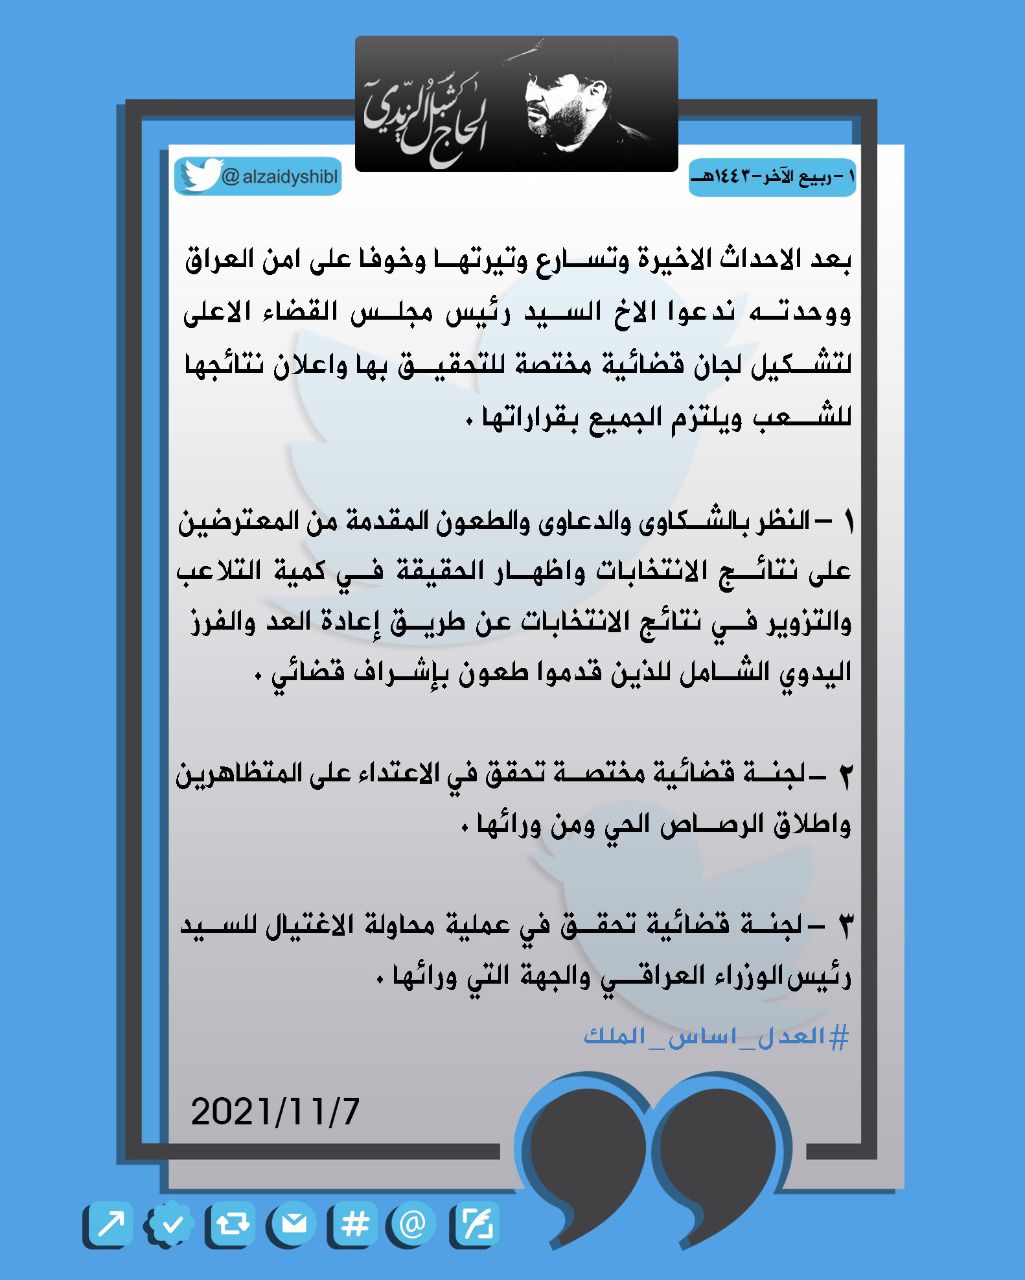 المجاهد شبل الزيدي في تغريدة له يطالب بلجنة تحقيق حول الاحداث الجارية وماحدث لمنزل رئيس الوزراء